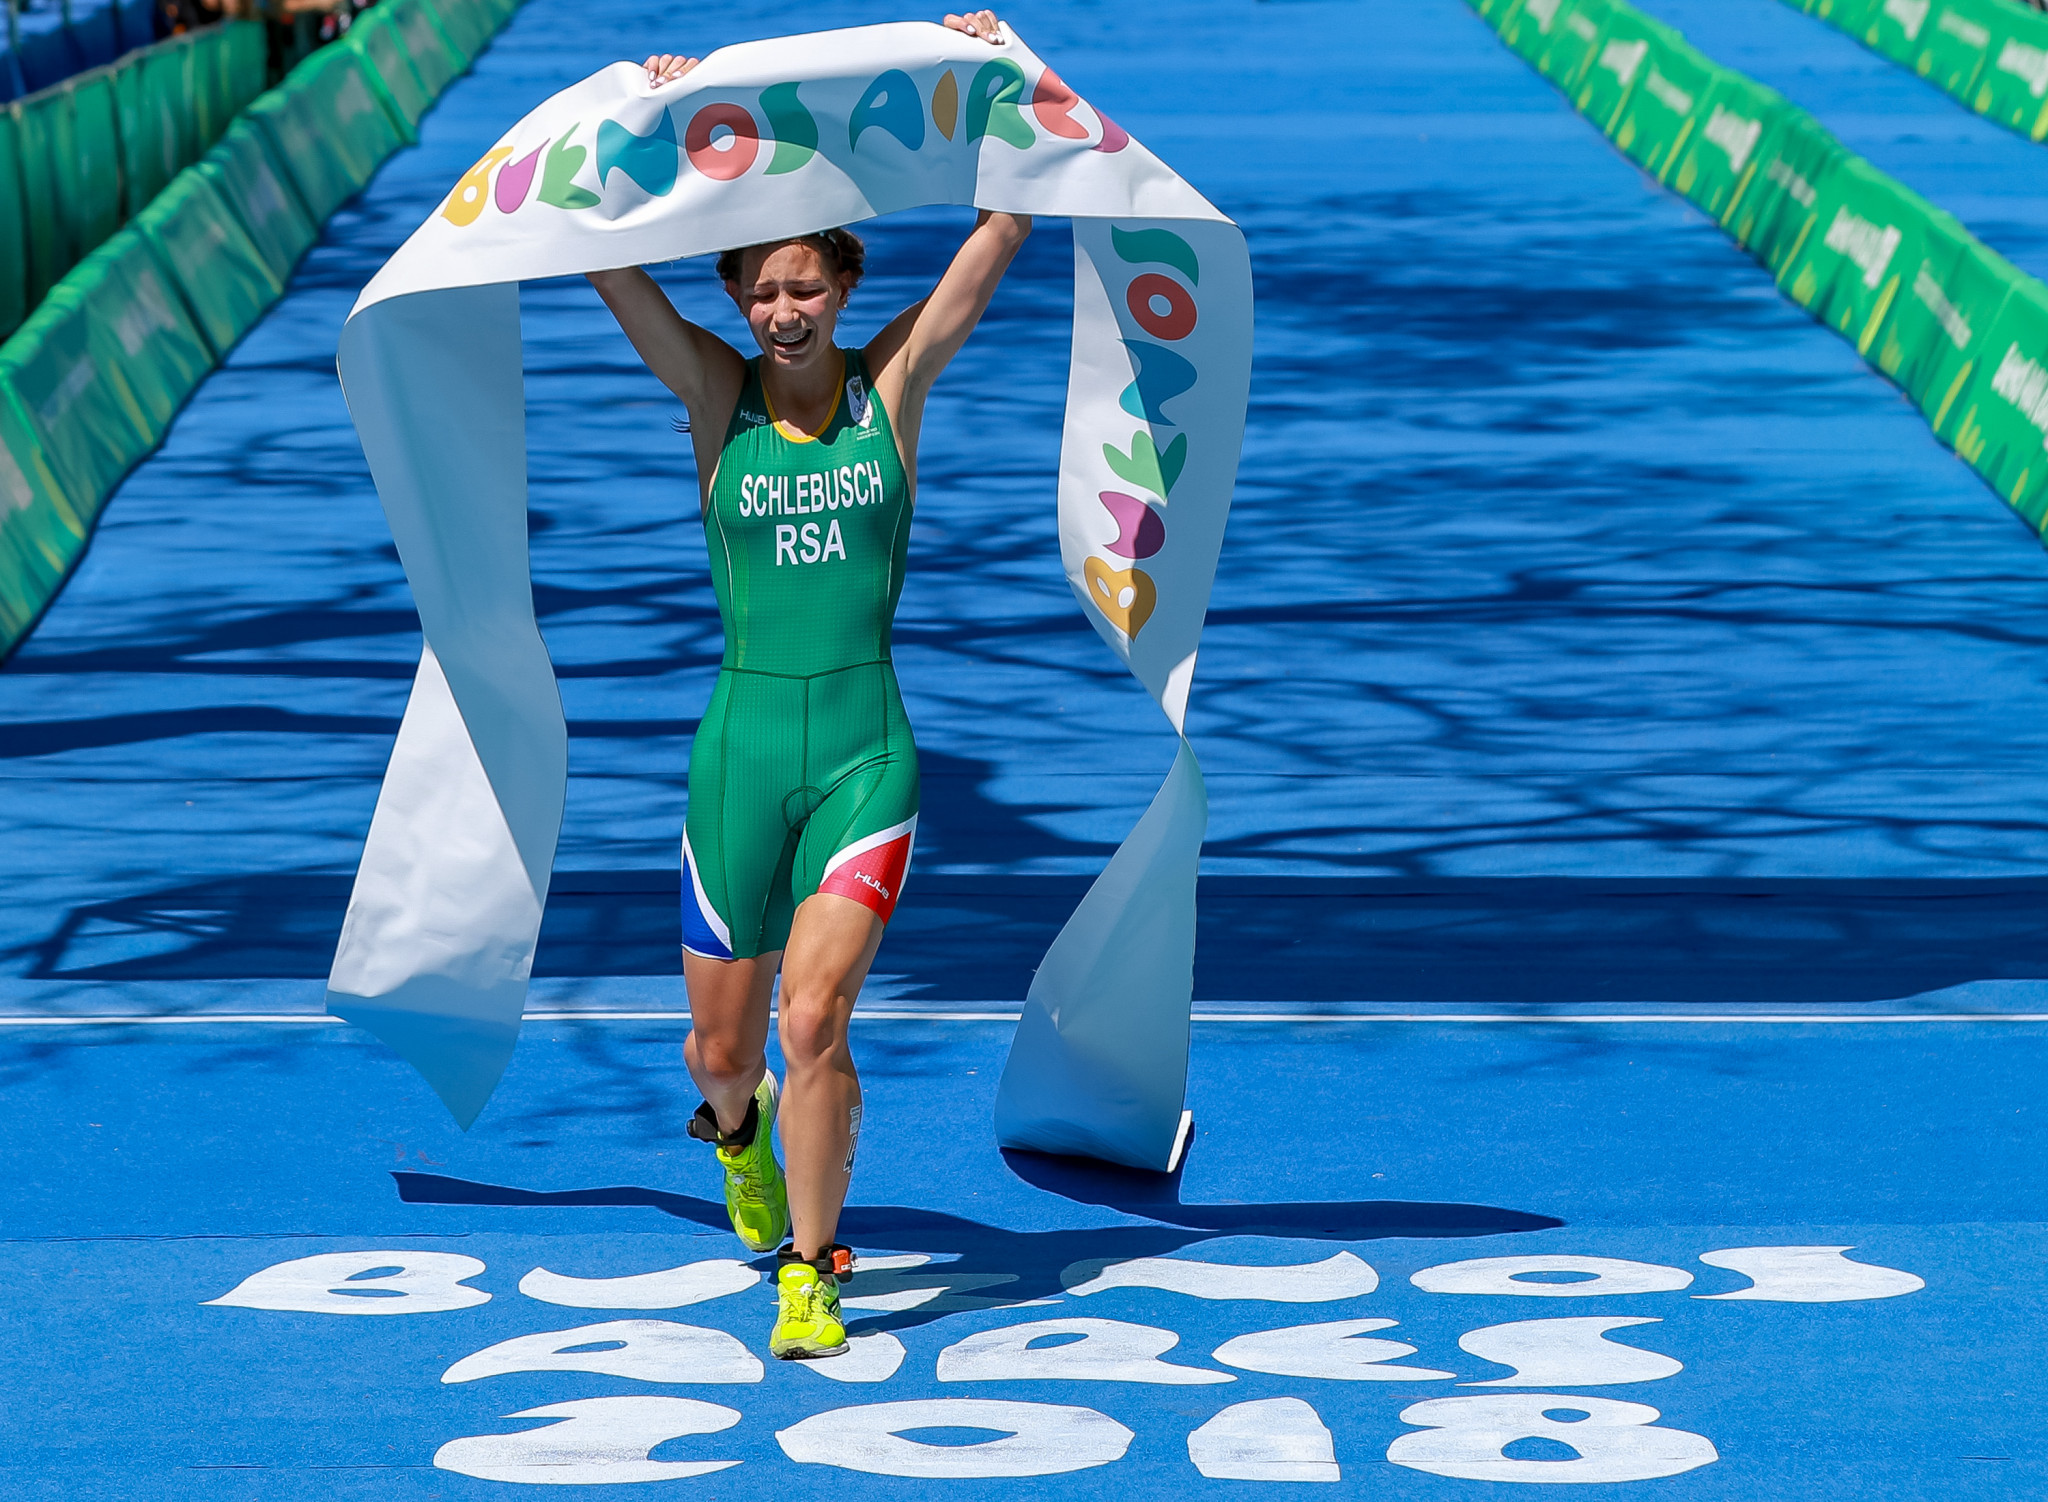 South African Amber Schlebusch won women's triathlon gold ©Getty Images